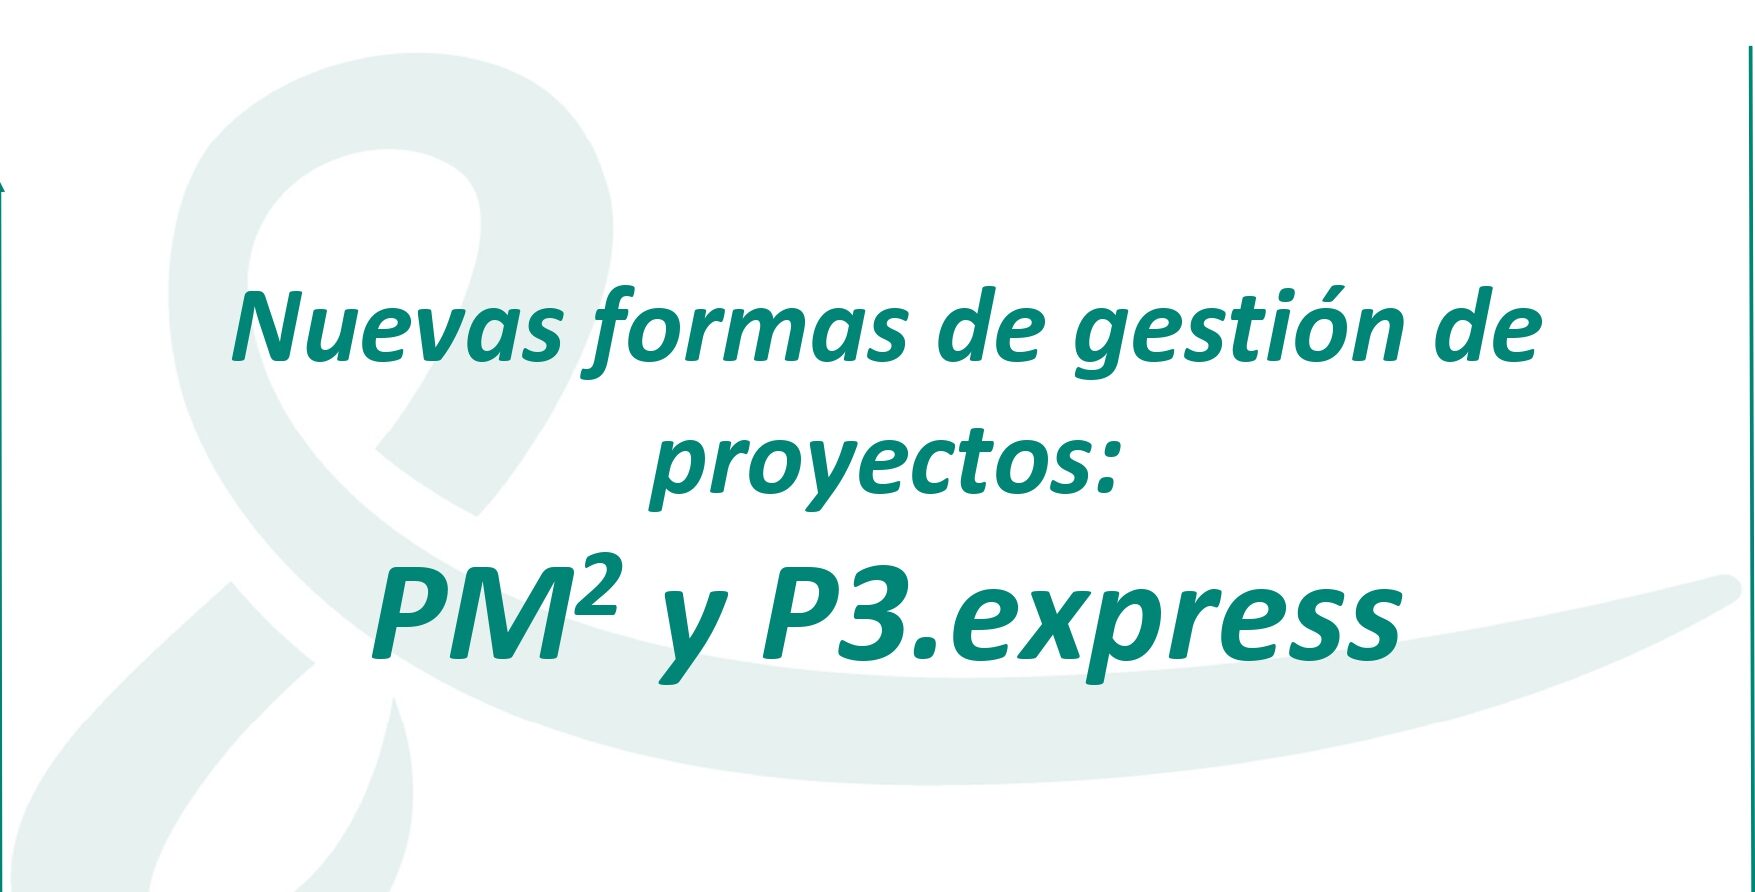 portada nuevas formas de gestion de proyectos pm2 y p3.express